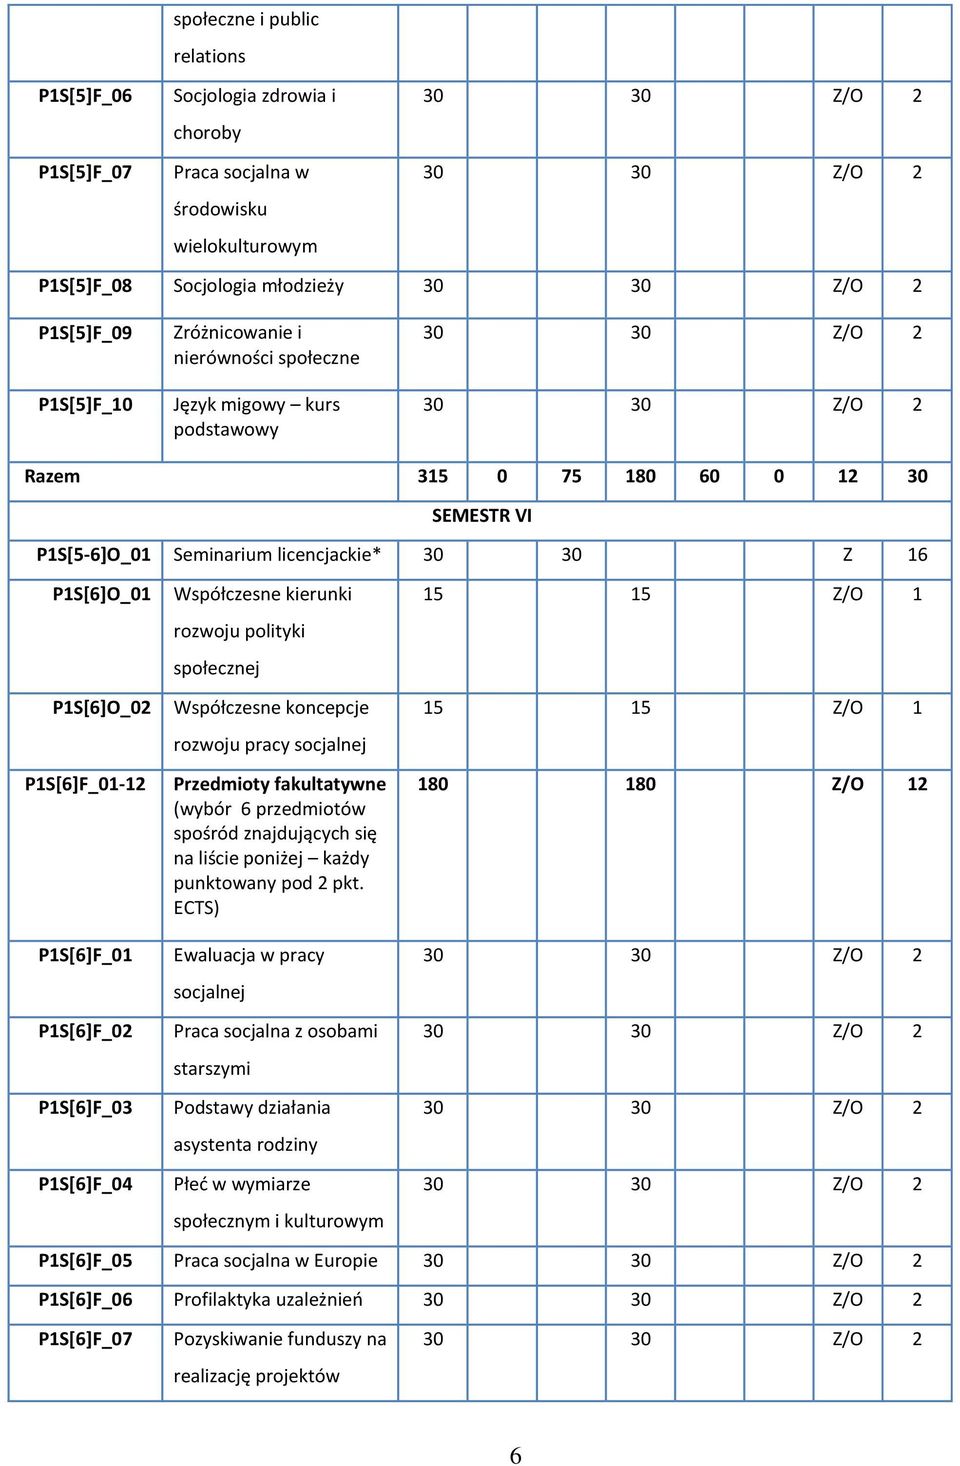 P1S[6]F_03 P1S[6]F_04 Współczesne kierunki rozwoju polityki społecznej Współczesne koncepcje rozwoju pracy socjalnej Przedmioty fakultatywne (wybór 6 przedmiotów spośród znajdujących się na liście